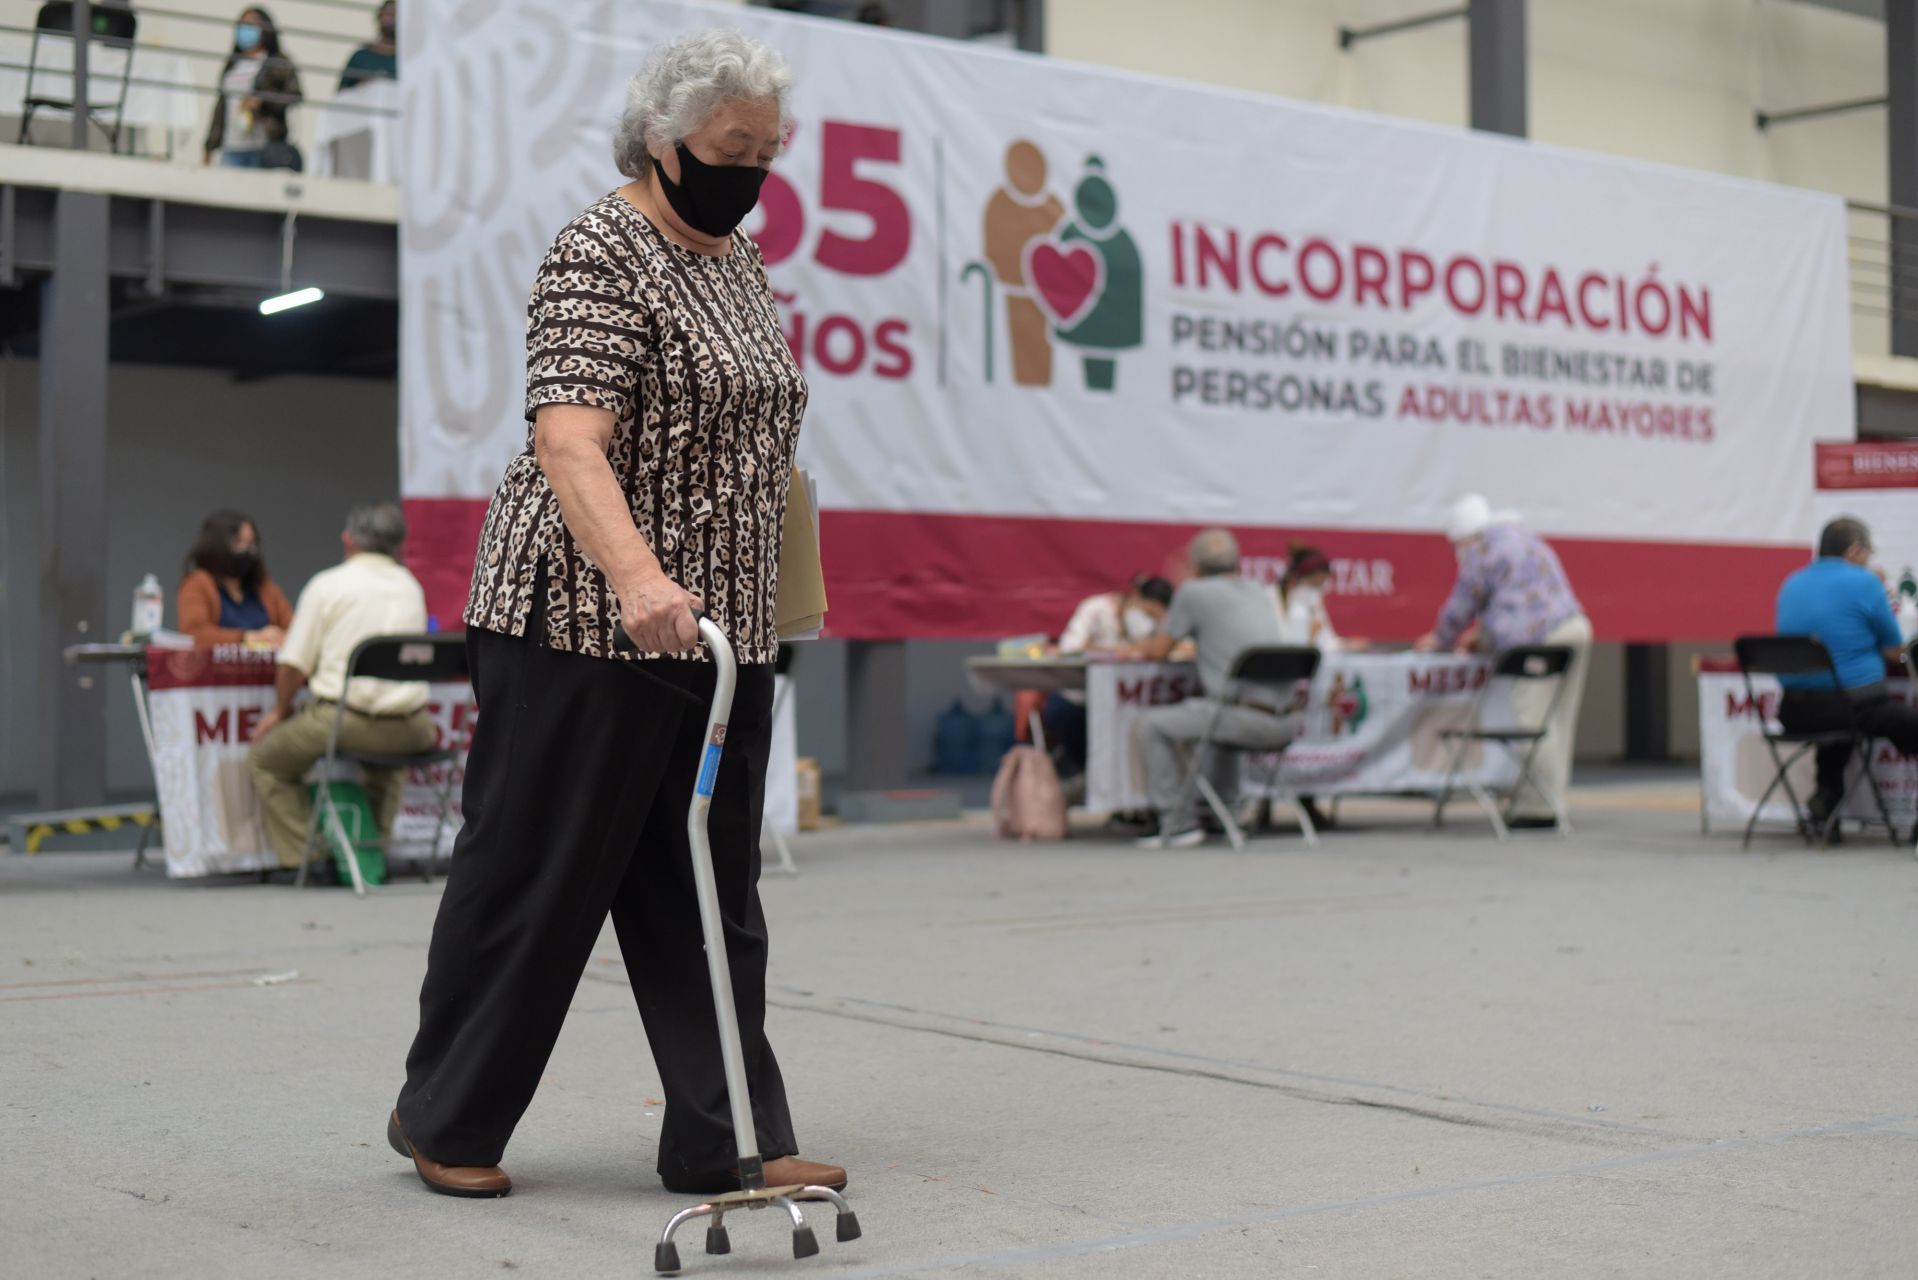 Nueve millones 311 mil 834 personas adultas mayores reciben una pensión de 3 mil 100 pesos bimestrales